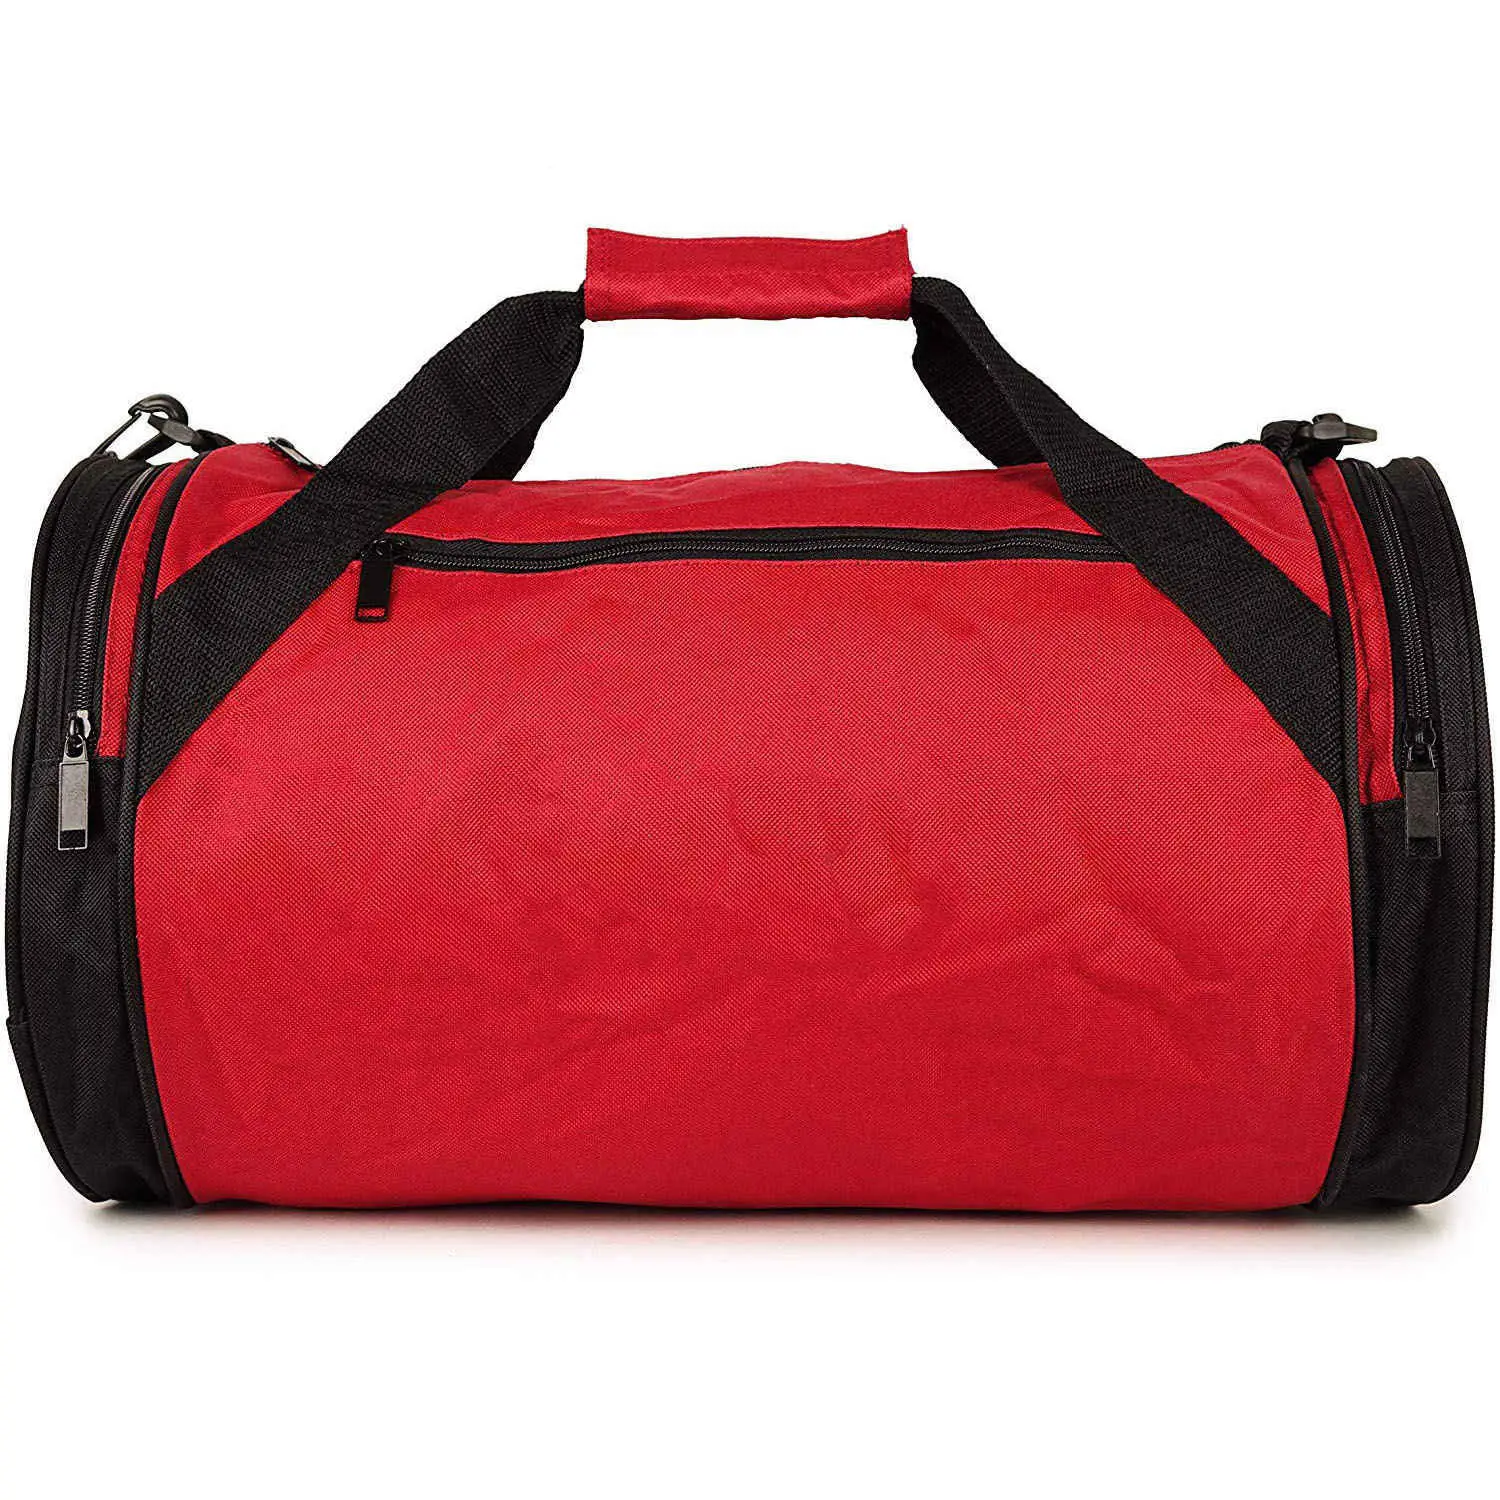 Grand sac de voyage de sport en toile en forme de baril, sac de sport en toile de coton denim durable pour les voyages